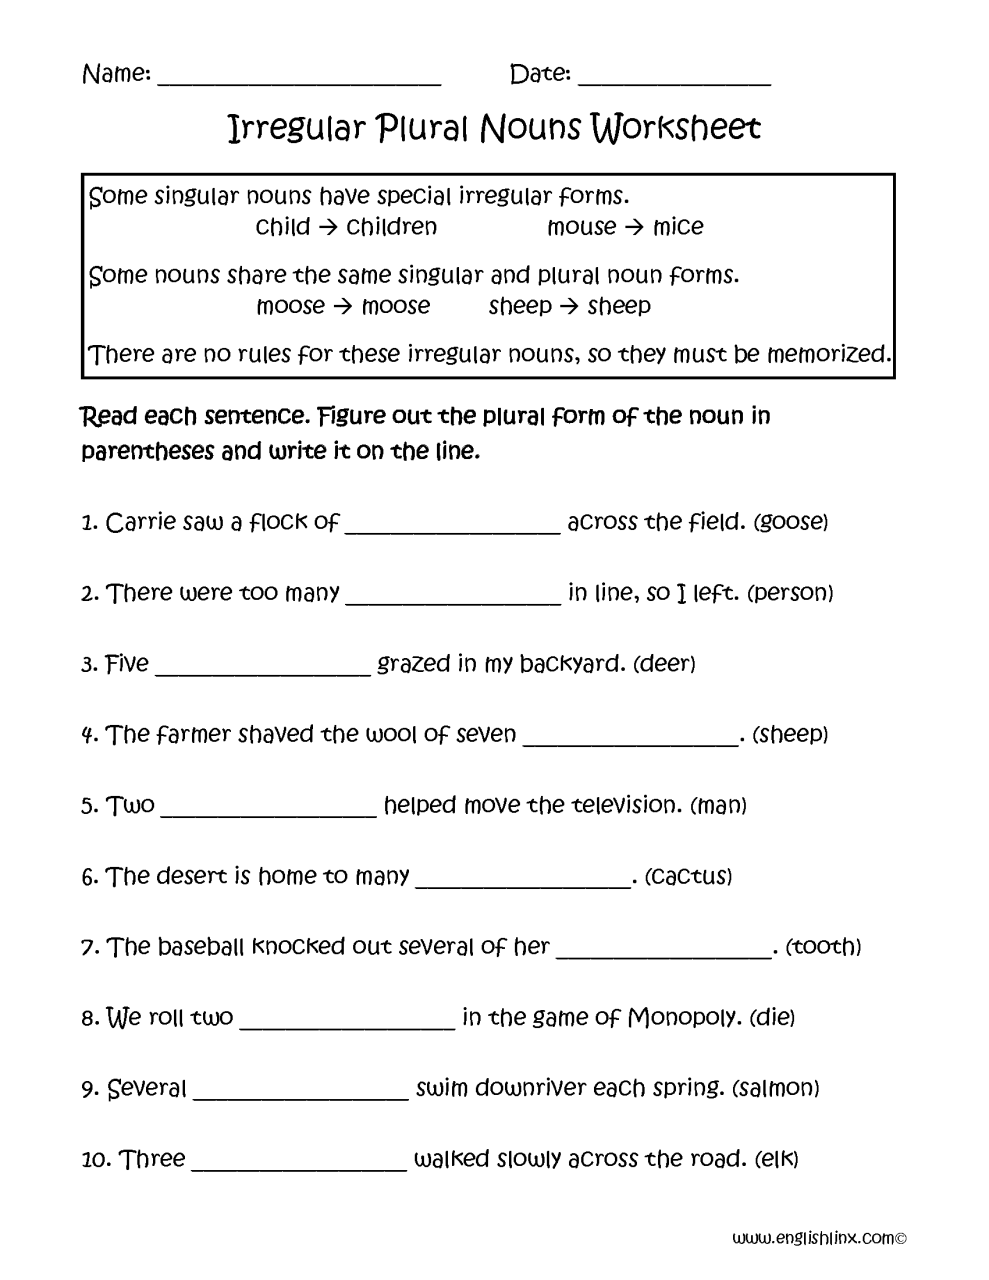 Irregular Plural Nouns Worksheet Grade 4 Kidsworksheetfun